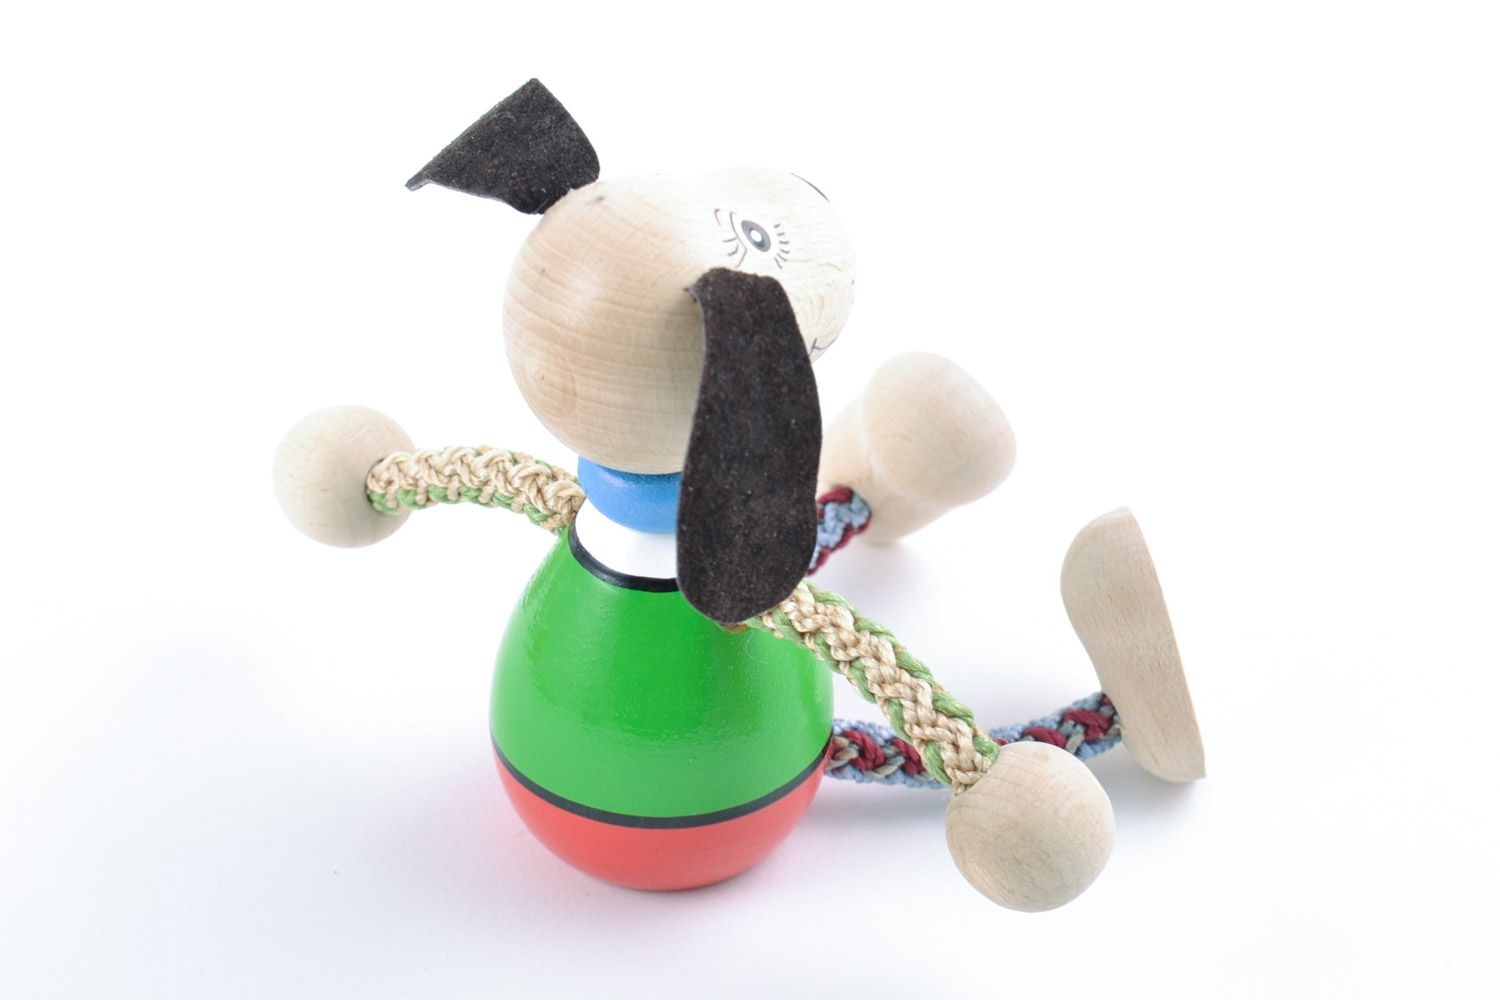 Designer Öko bemaltes kleines interessantes Holz Spielzeug Hund Handarbeit toll  foto 4